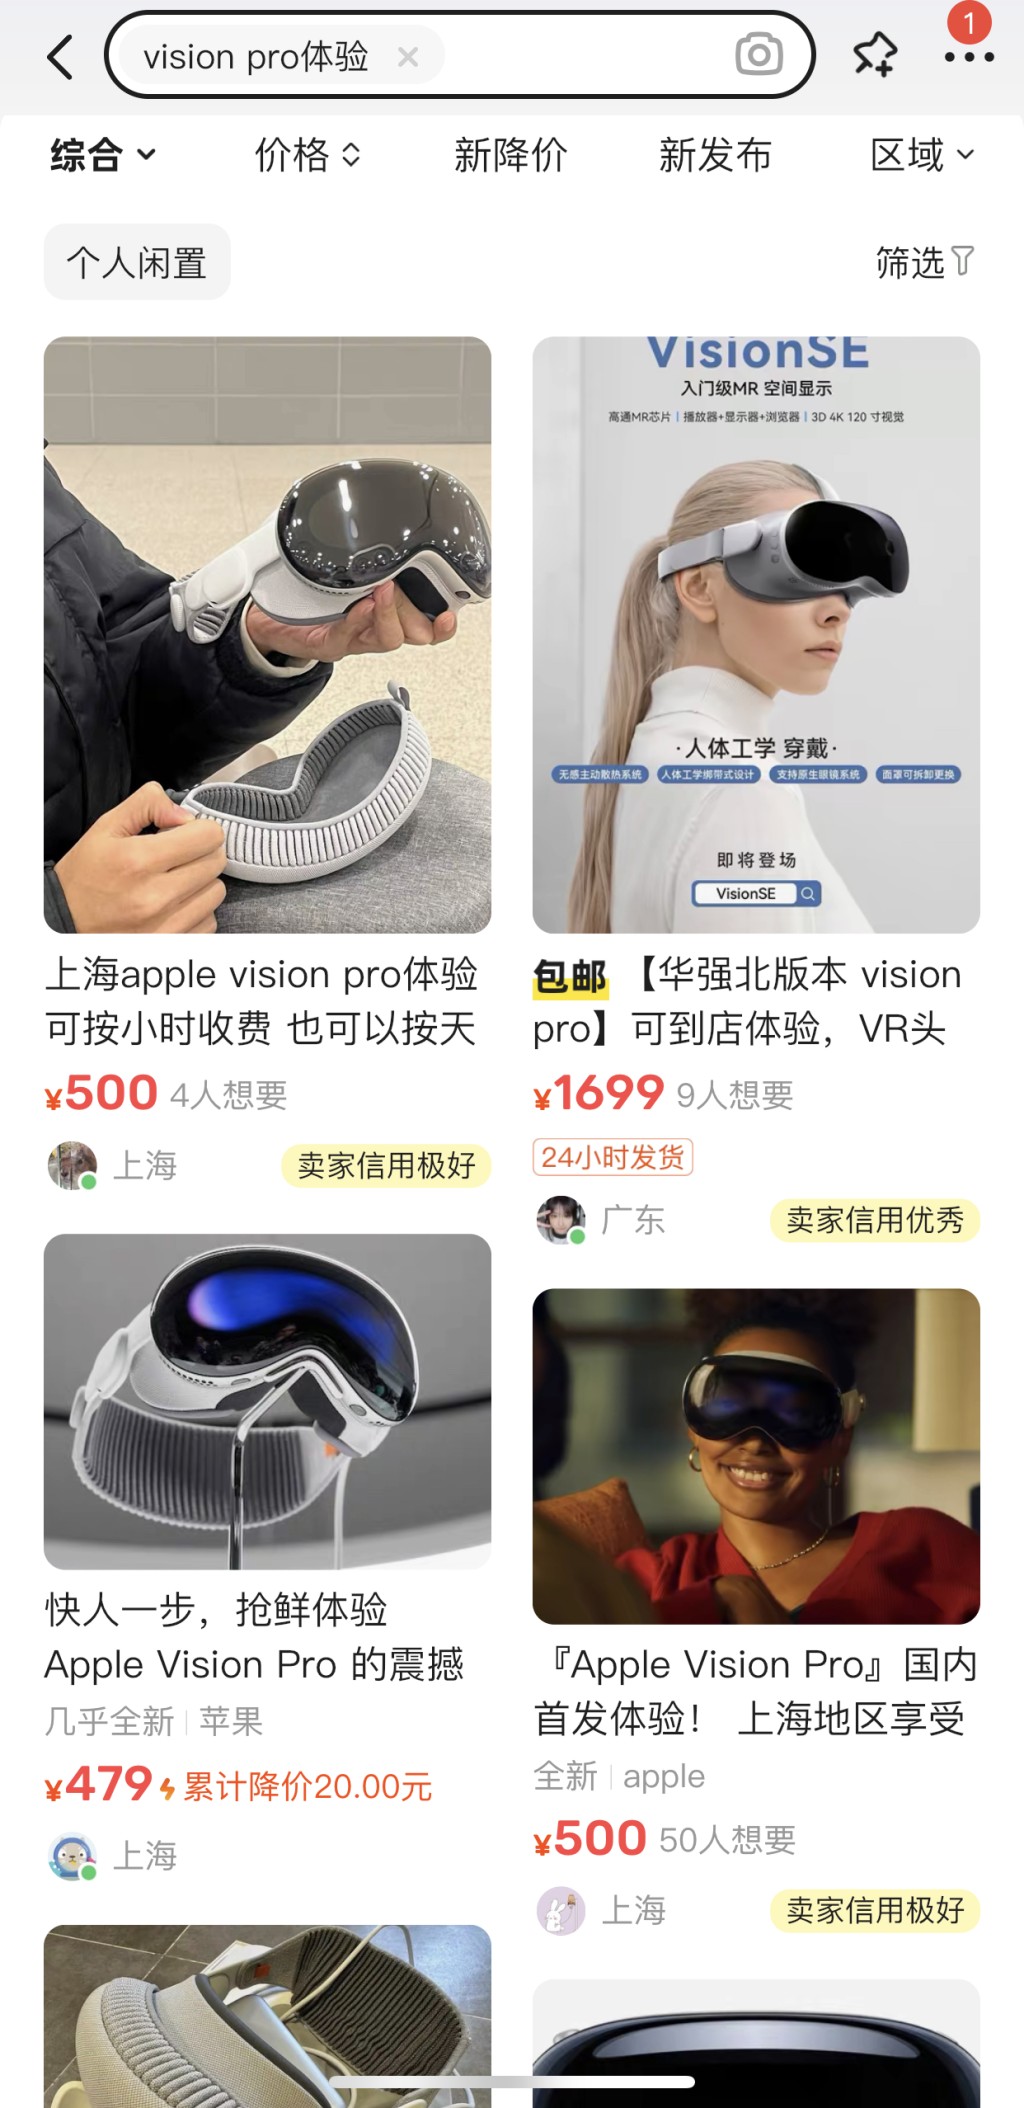 另外，在闲鱼上，北京、上海、深圳和杭州等部分城市已出现Vision Pro线下体验招募的帖子。